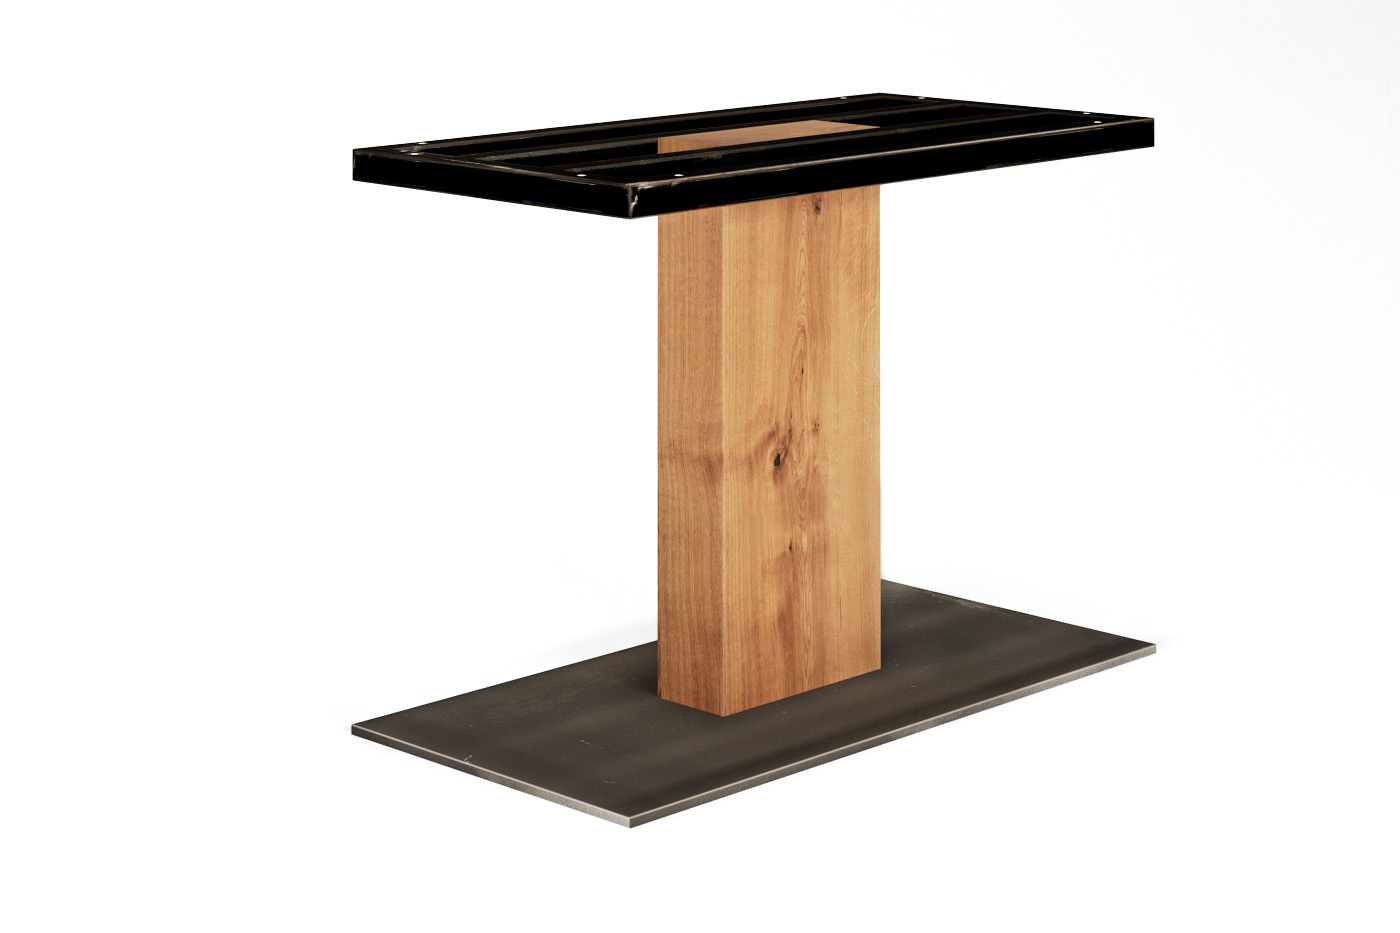 Tischgestell mit Holzgestell und Metallfuß und Metallrahmen in Schwarz vom Typ Torvald